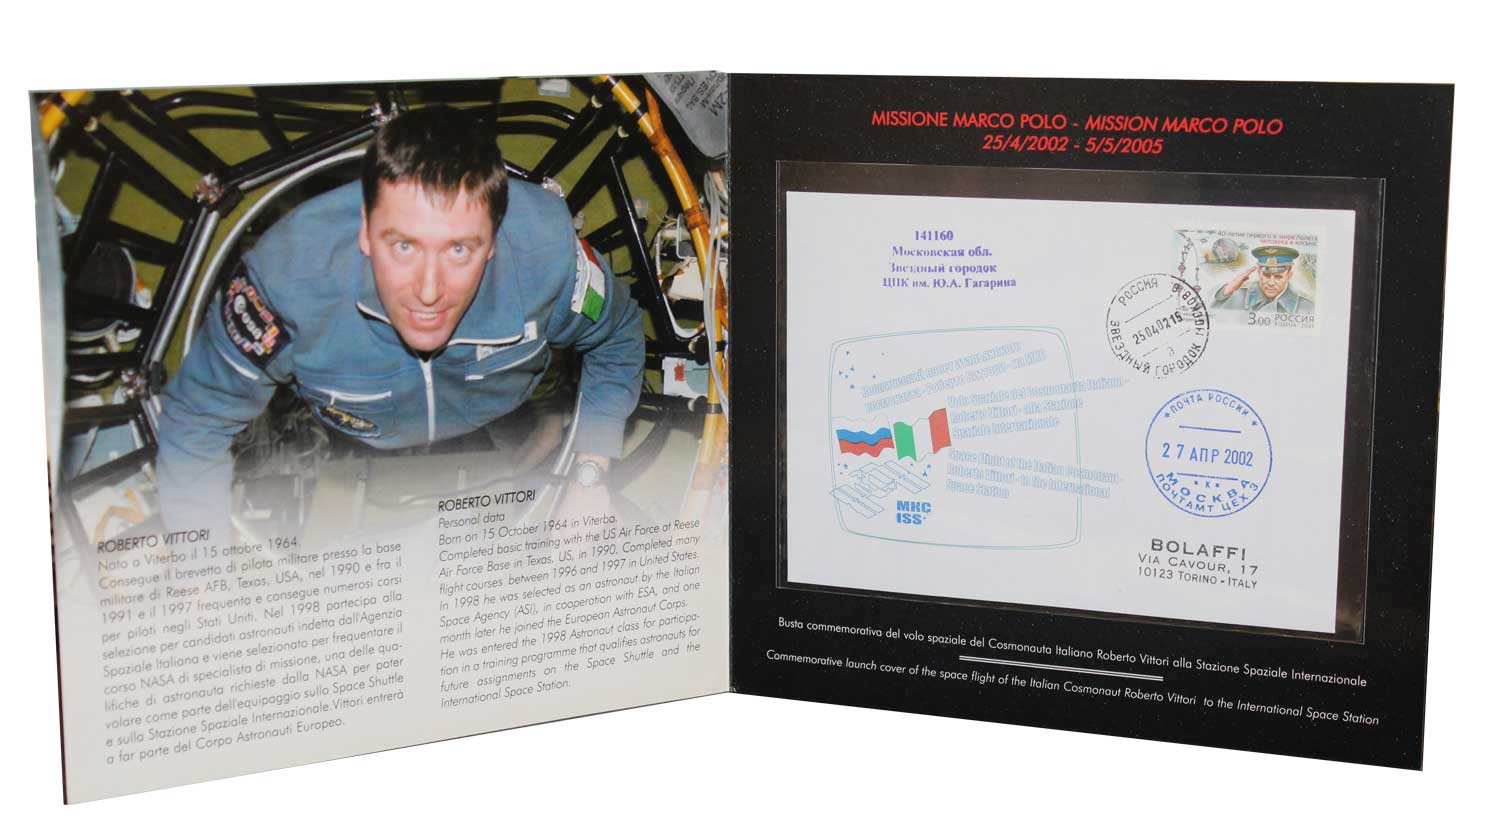 Folder "Missione Marco Polo" - cosmonauta Roberto Vittori alla Stazione Spaziale Internazionale